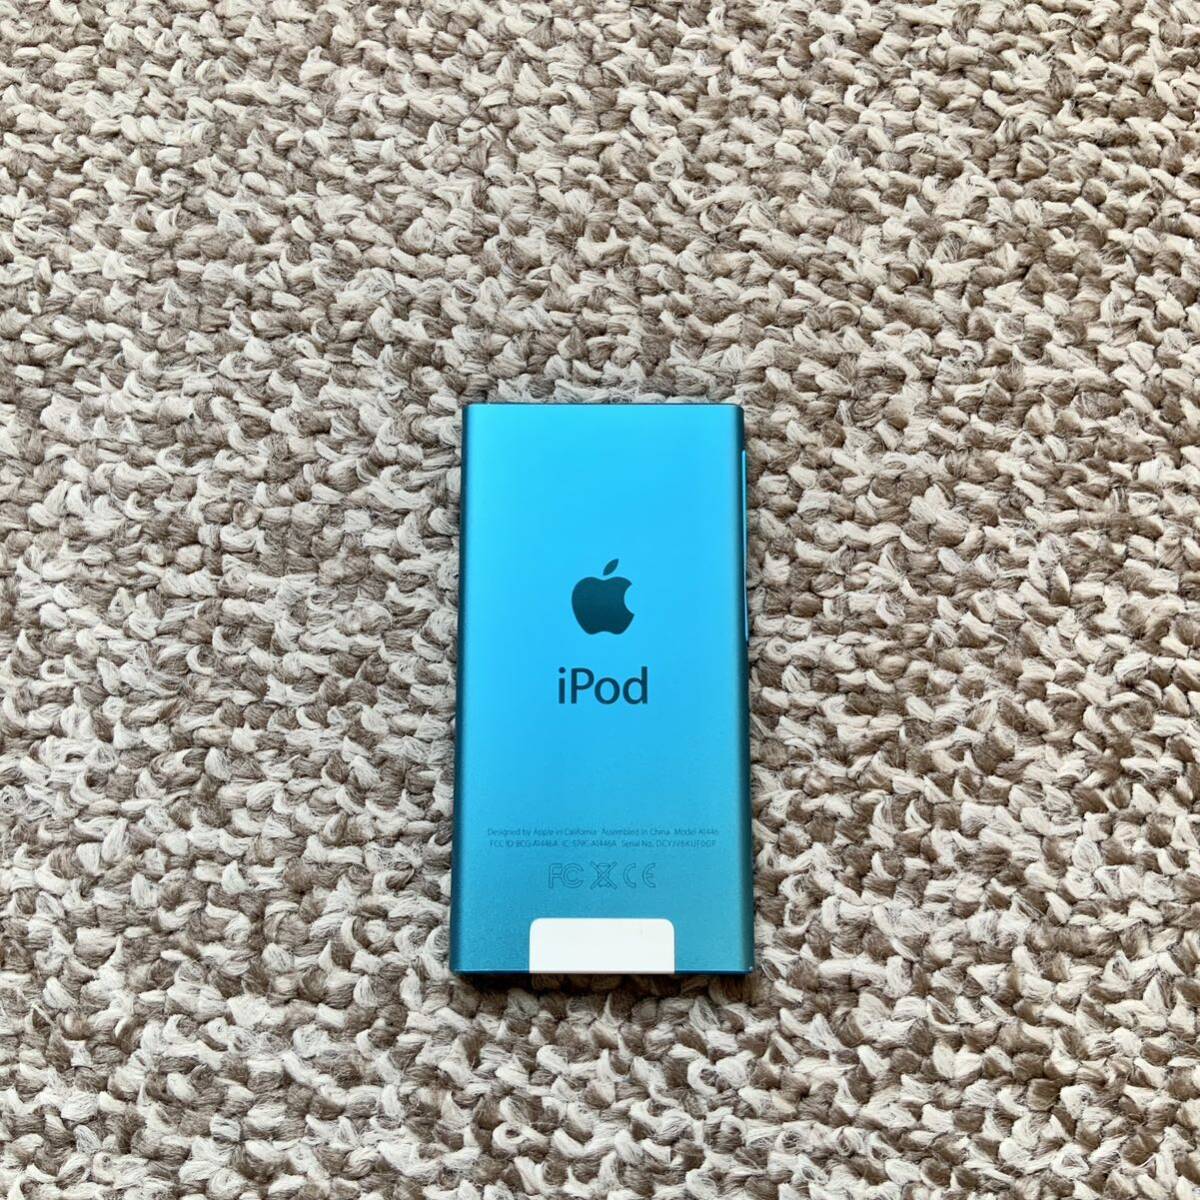 iPod nano 第7世代 16GB Apple アップル A1446 アイポッドナノ 本体 b 送料無料